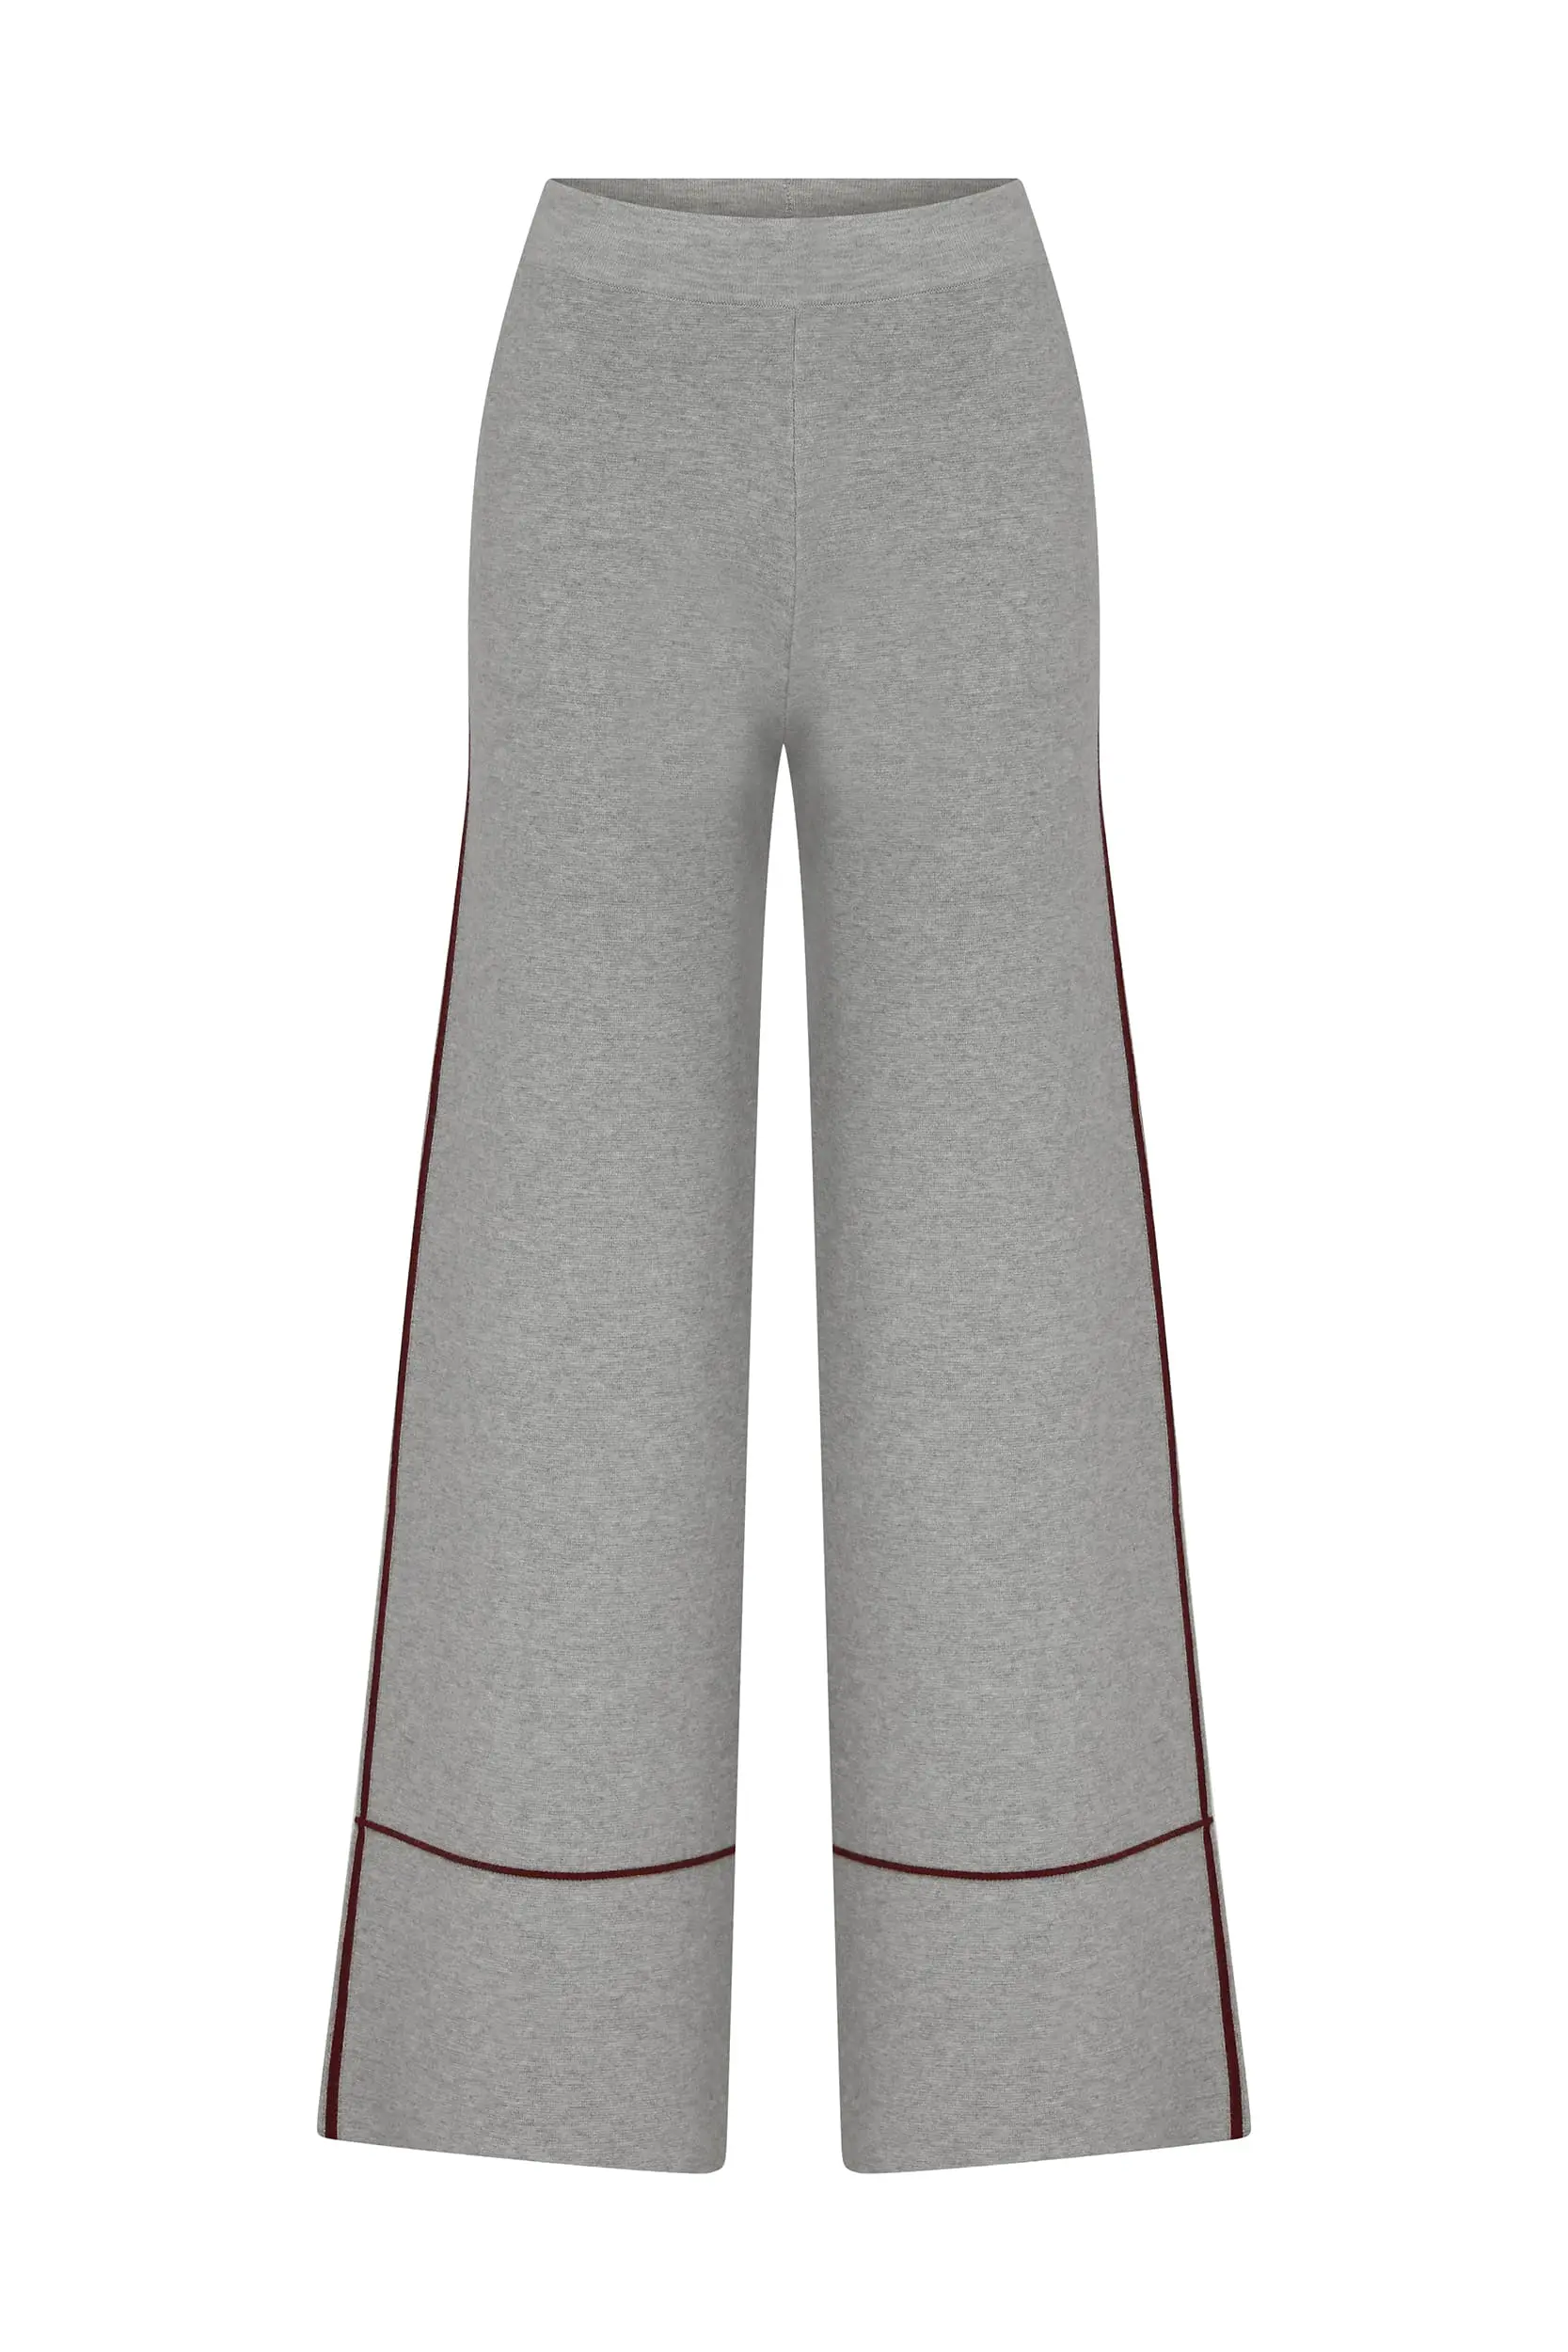 Roman Line Detailed Gray Knitwear Trousers - 1 / GREY. 1